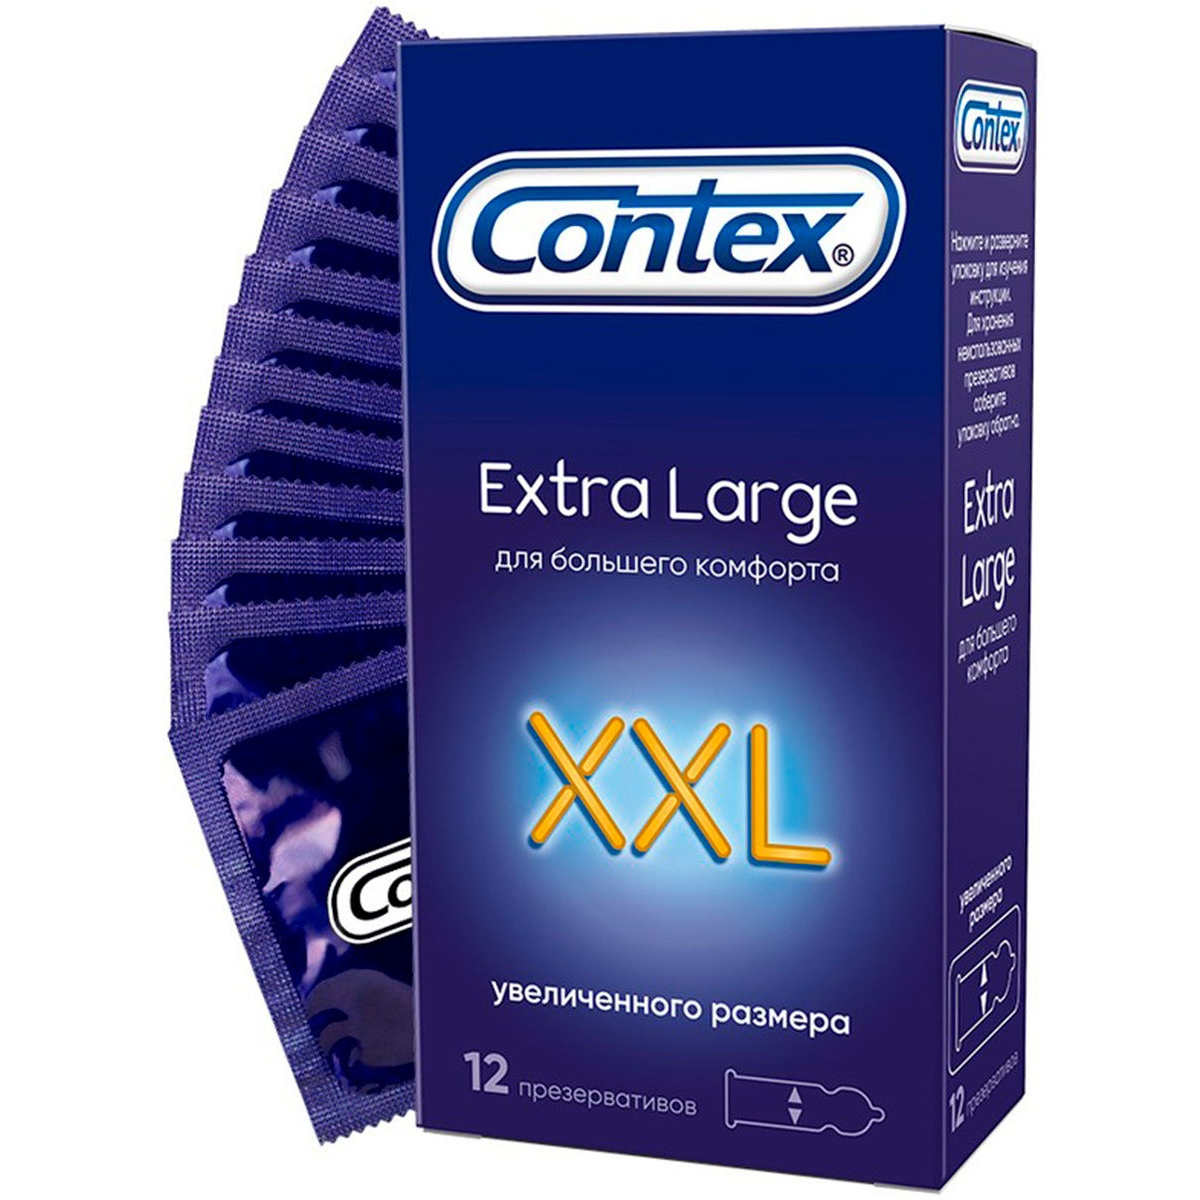 Презервативы Contex XXL Extra large №12 презервативы contex extra large 12 шт